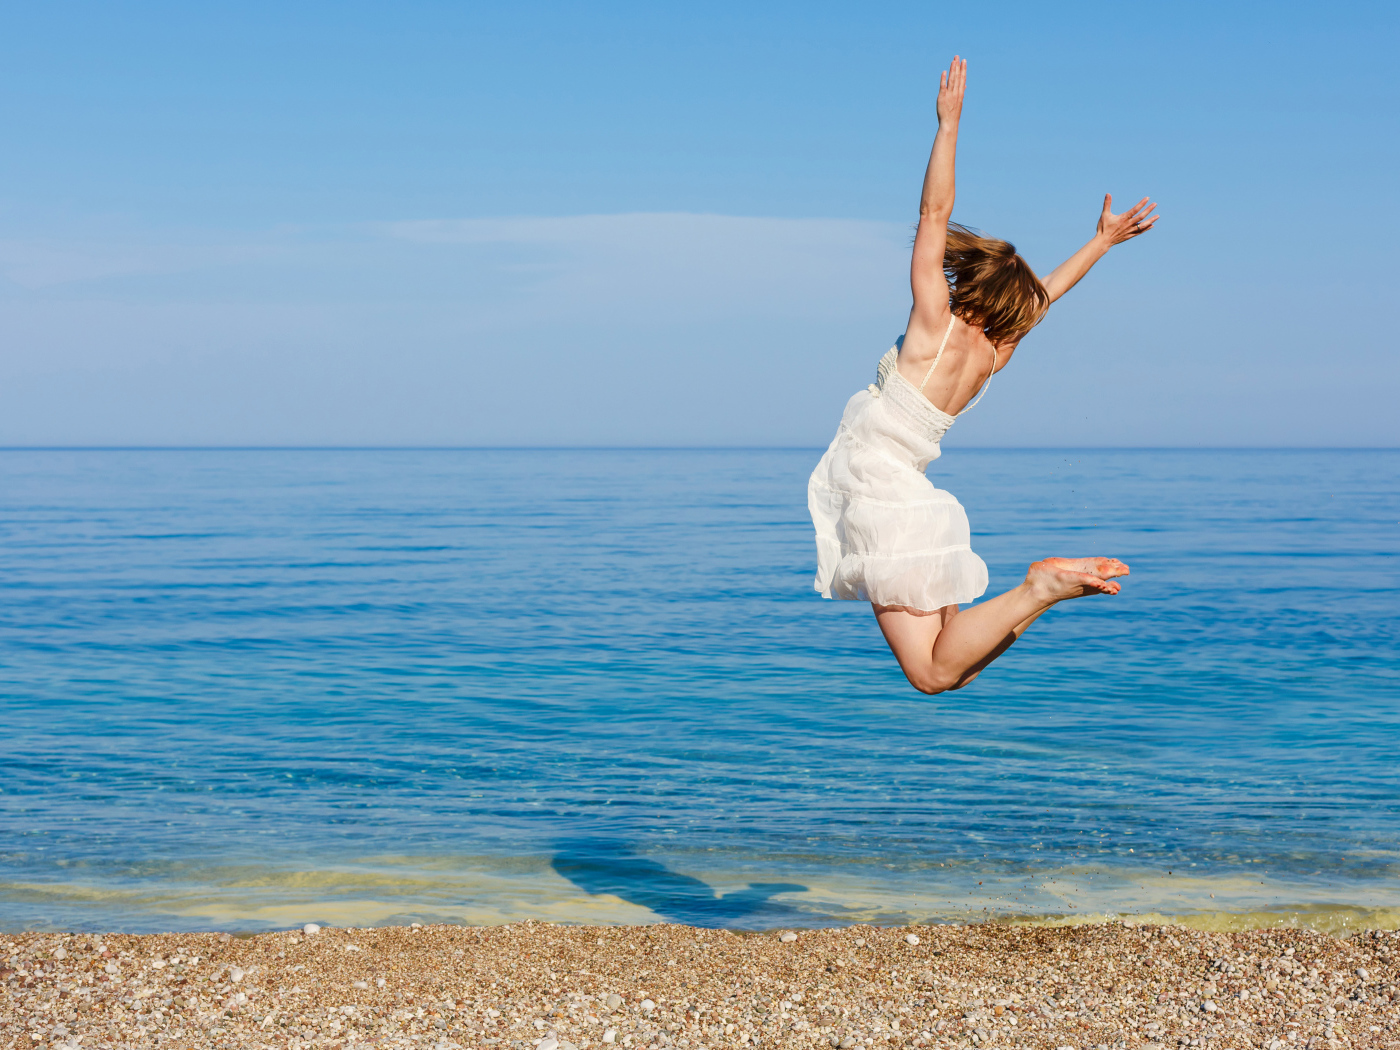 Молодая девушка в белом платье делаем прыжок на песке у моря